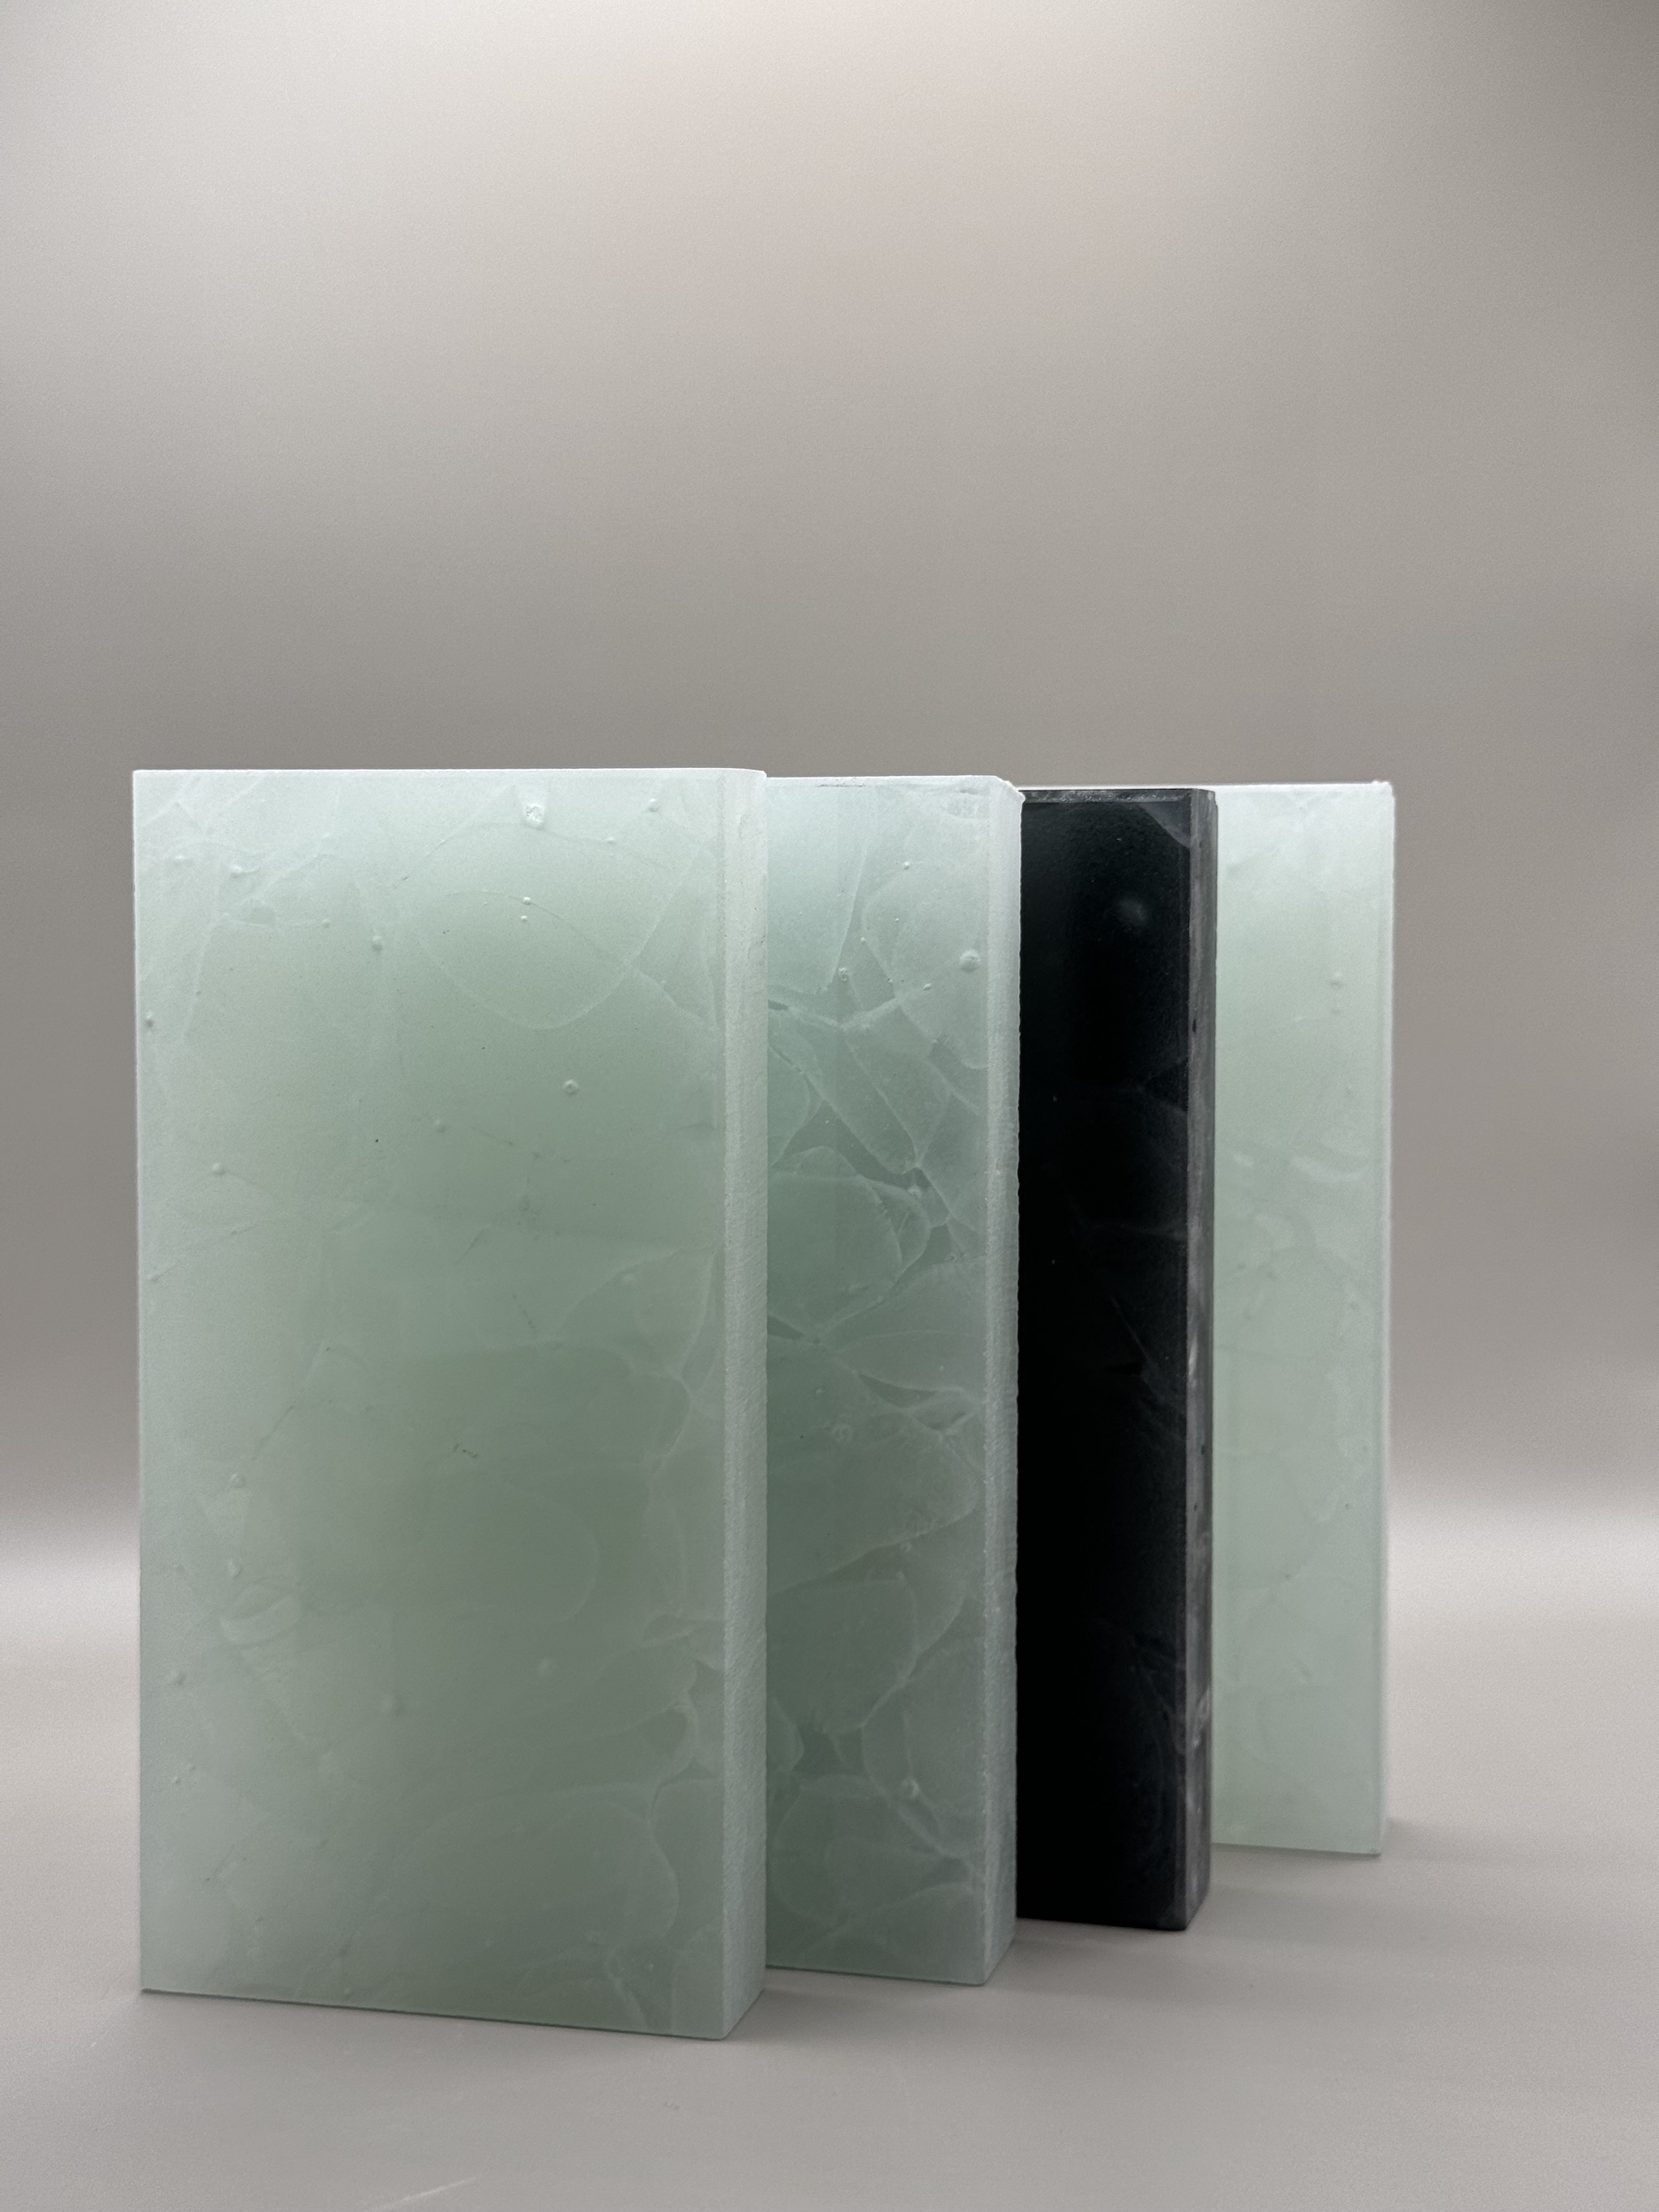 Bio-Glass Samples - Cartier4.jpeg